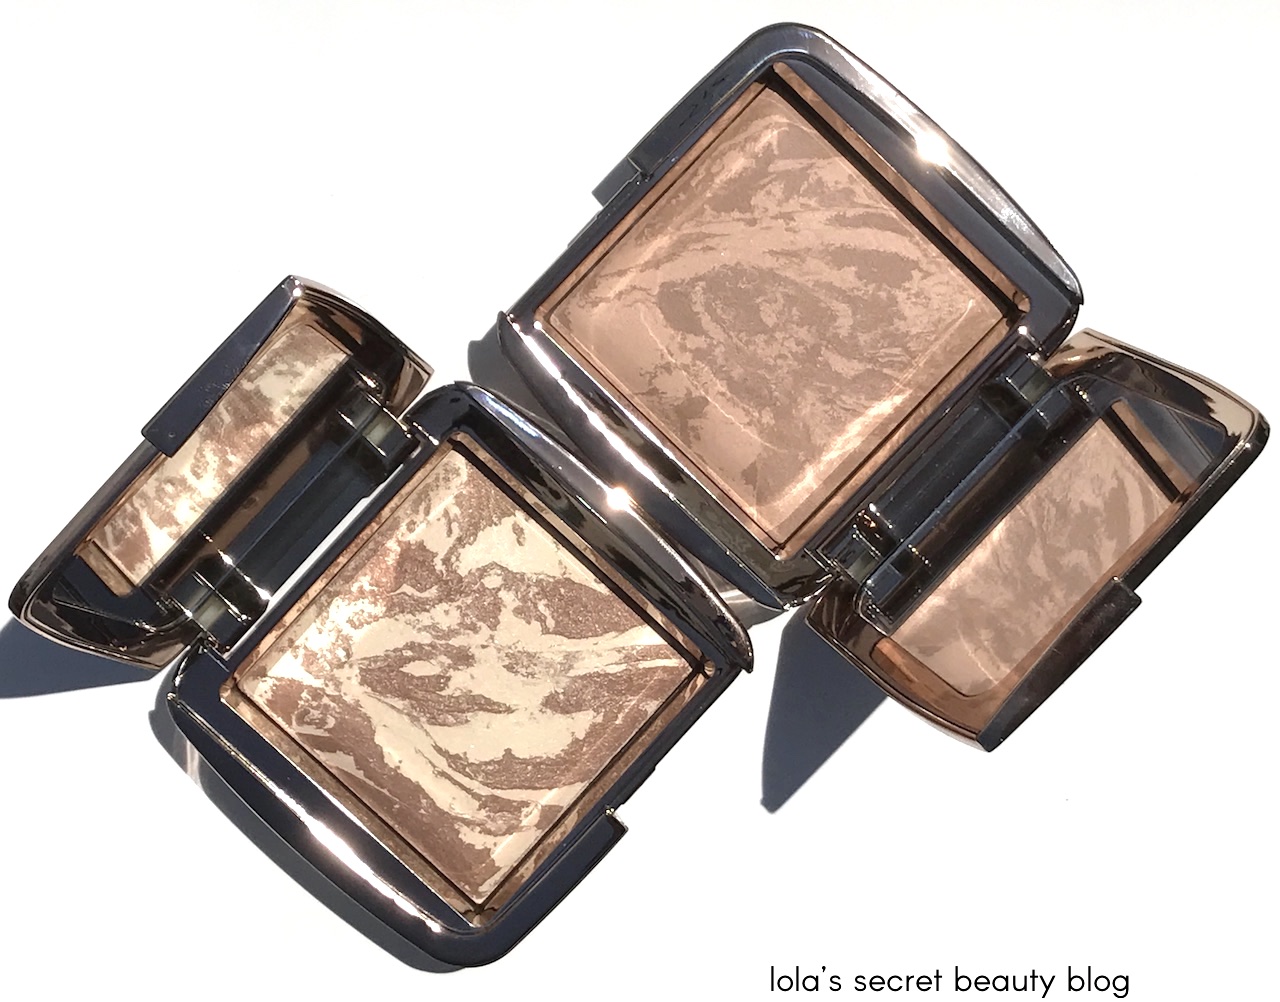 Hourglass Ambient Lighting Bronzer in Radiant Bronze Light - CrystalCandy  Makeup Blog